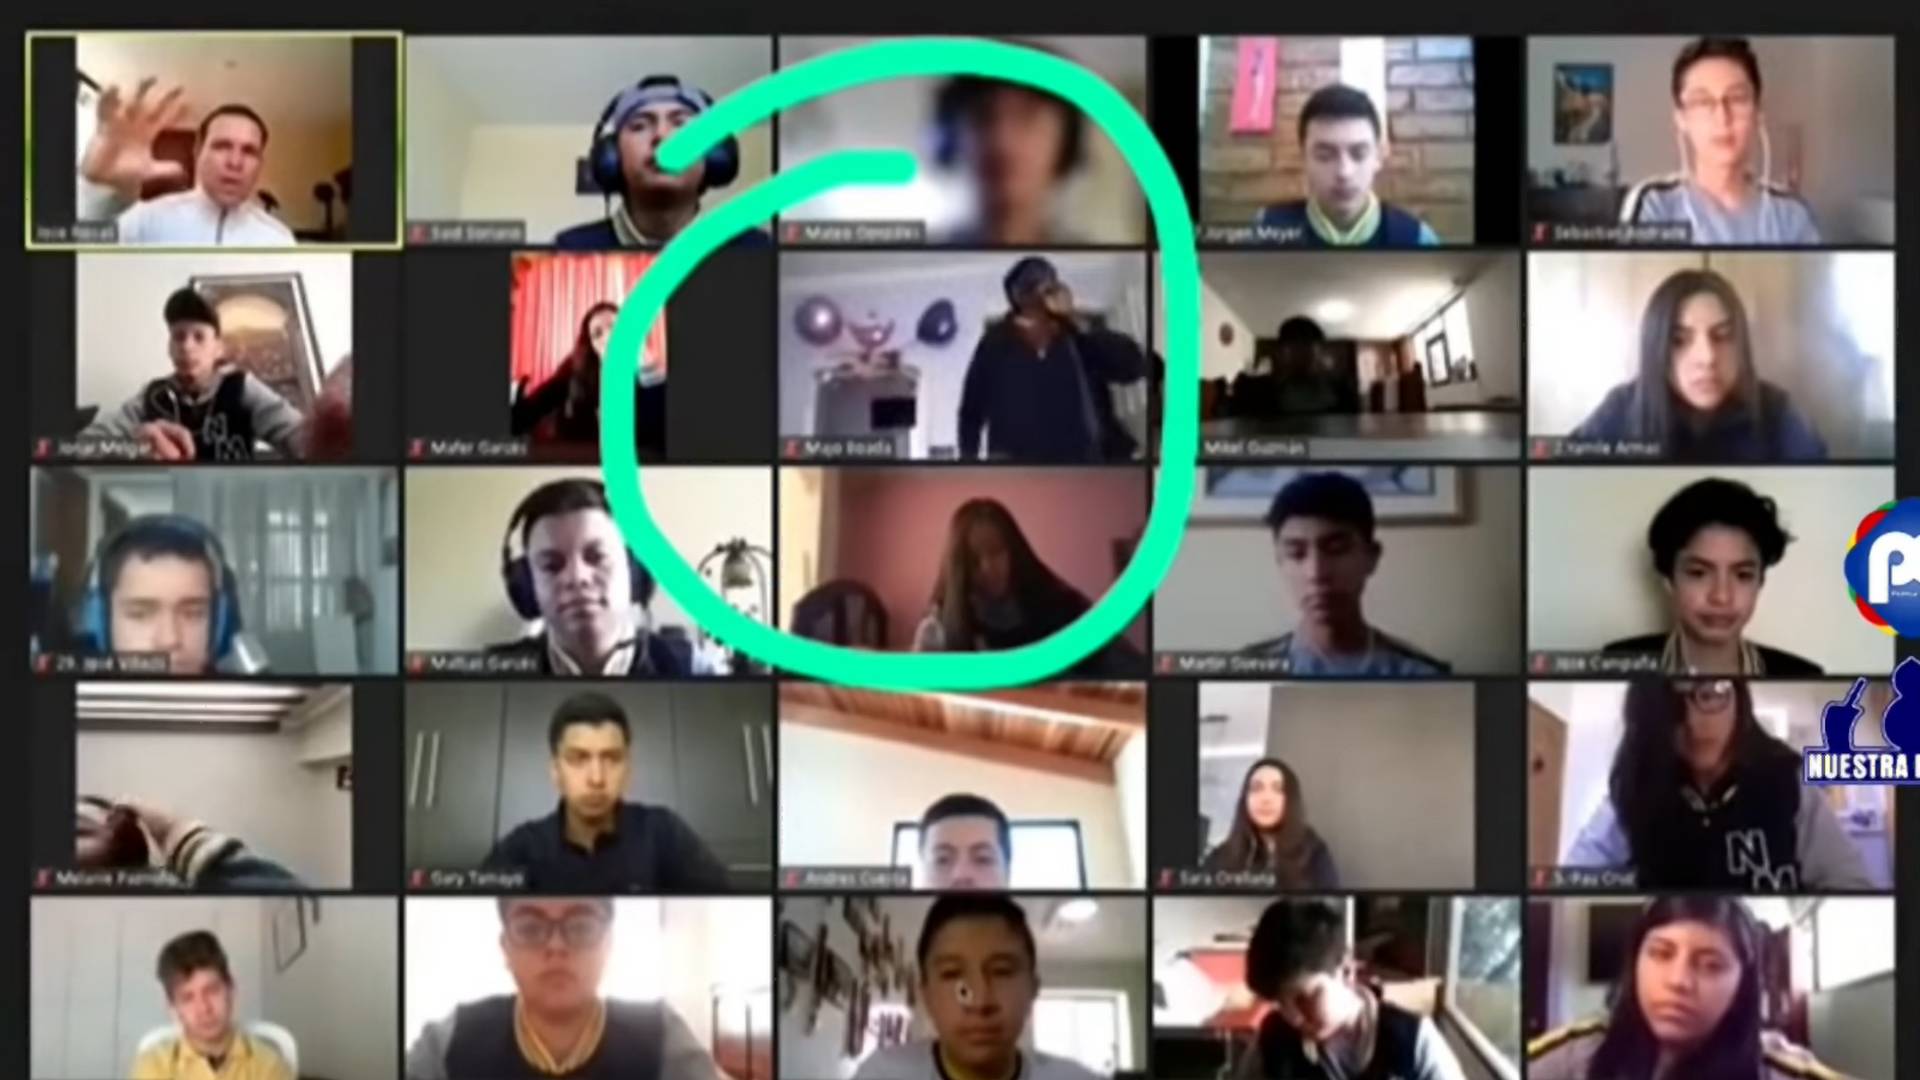 Zoom-videó: Élőben, online tanóra közben raboltak ki egy diákot